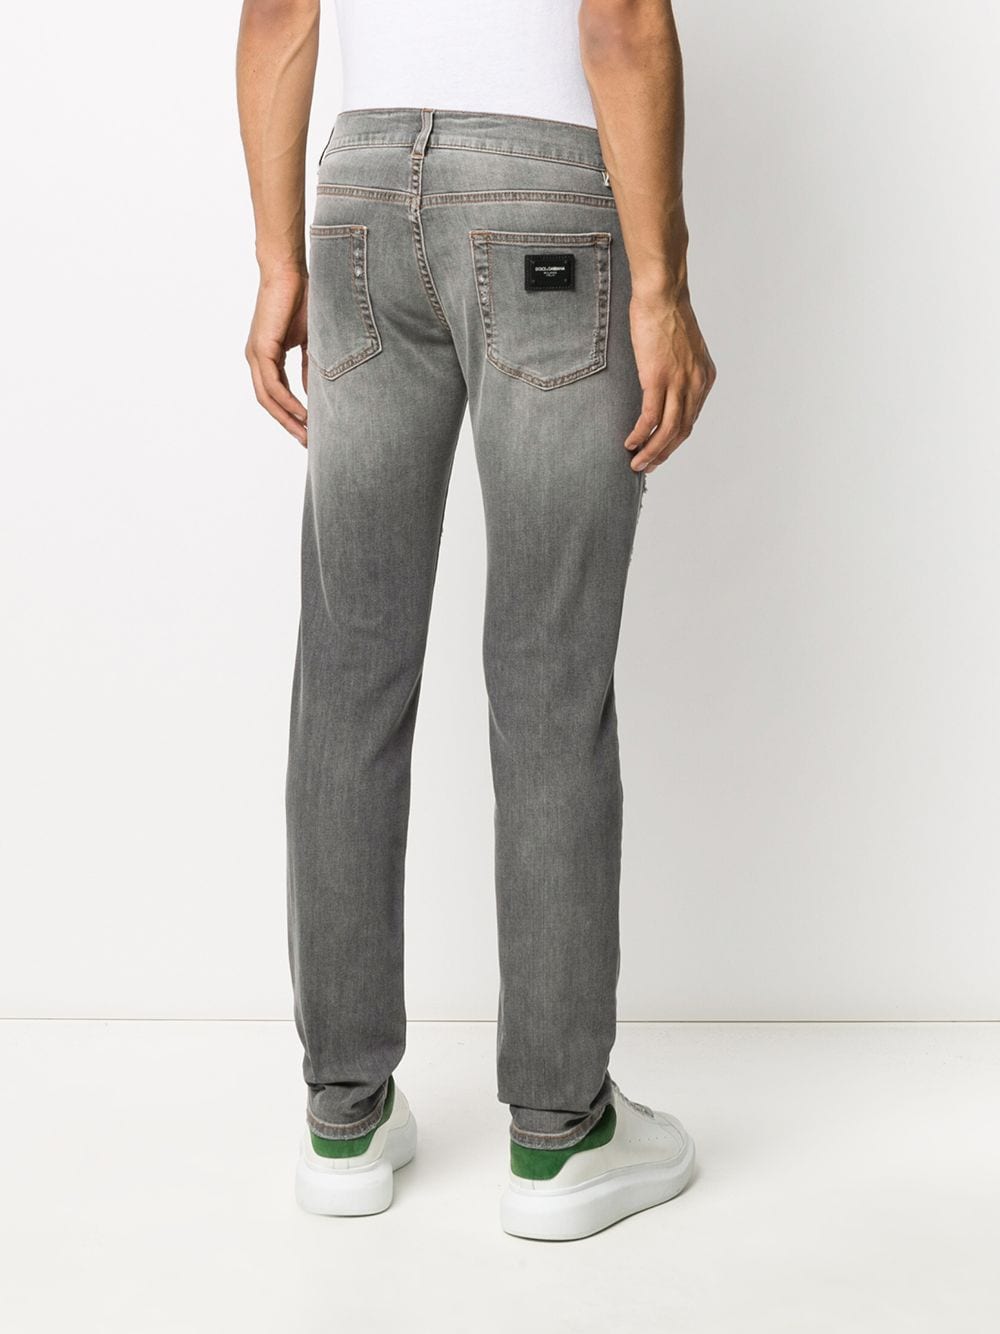 фото Dolce & gabbana джинсы прямого кроя с эффектом потертости